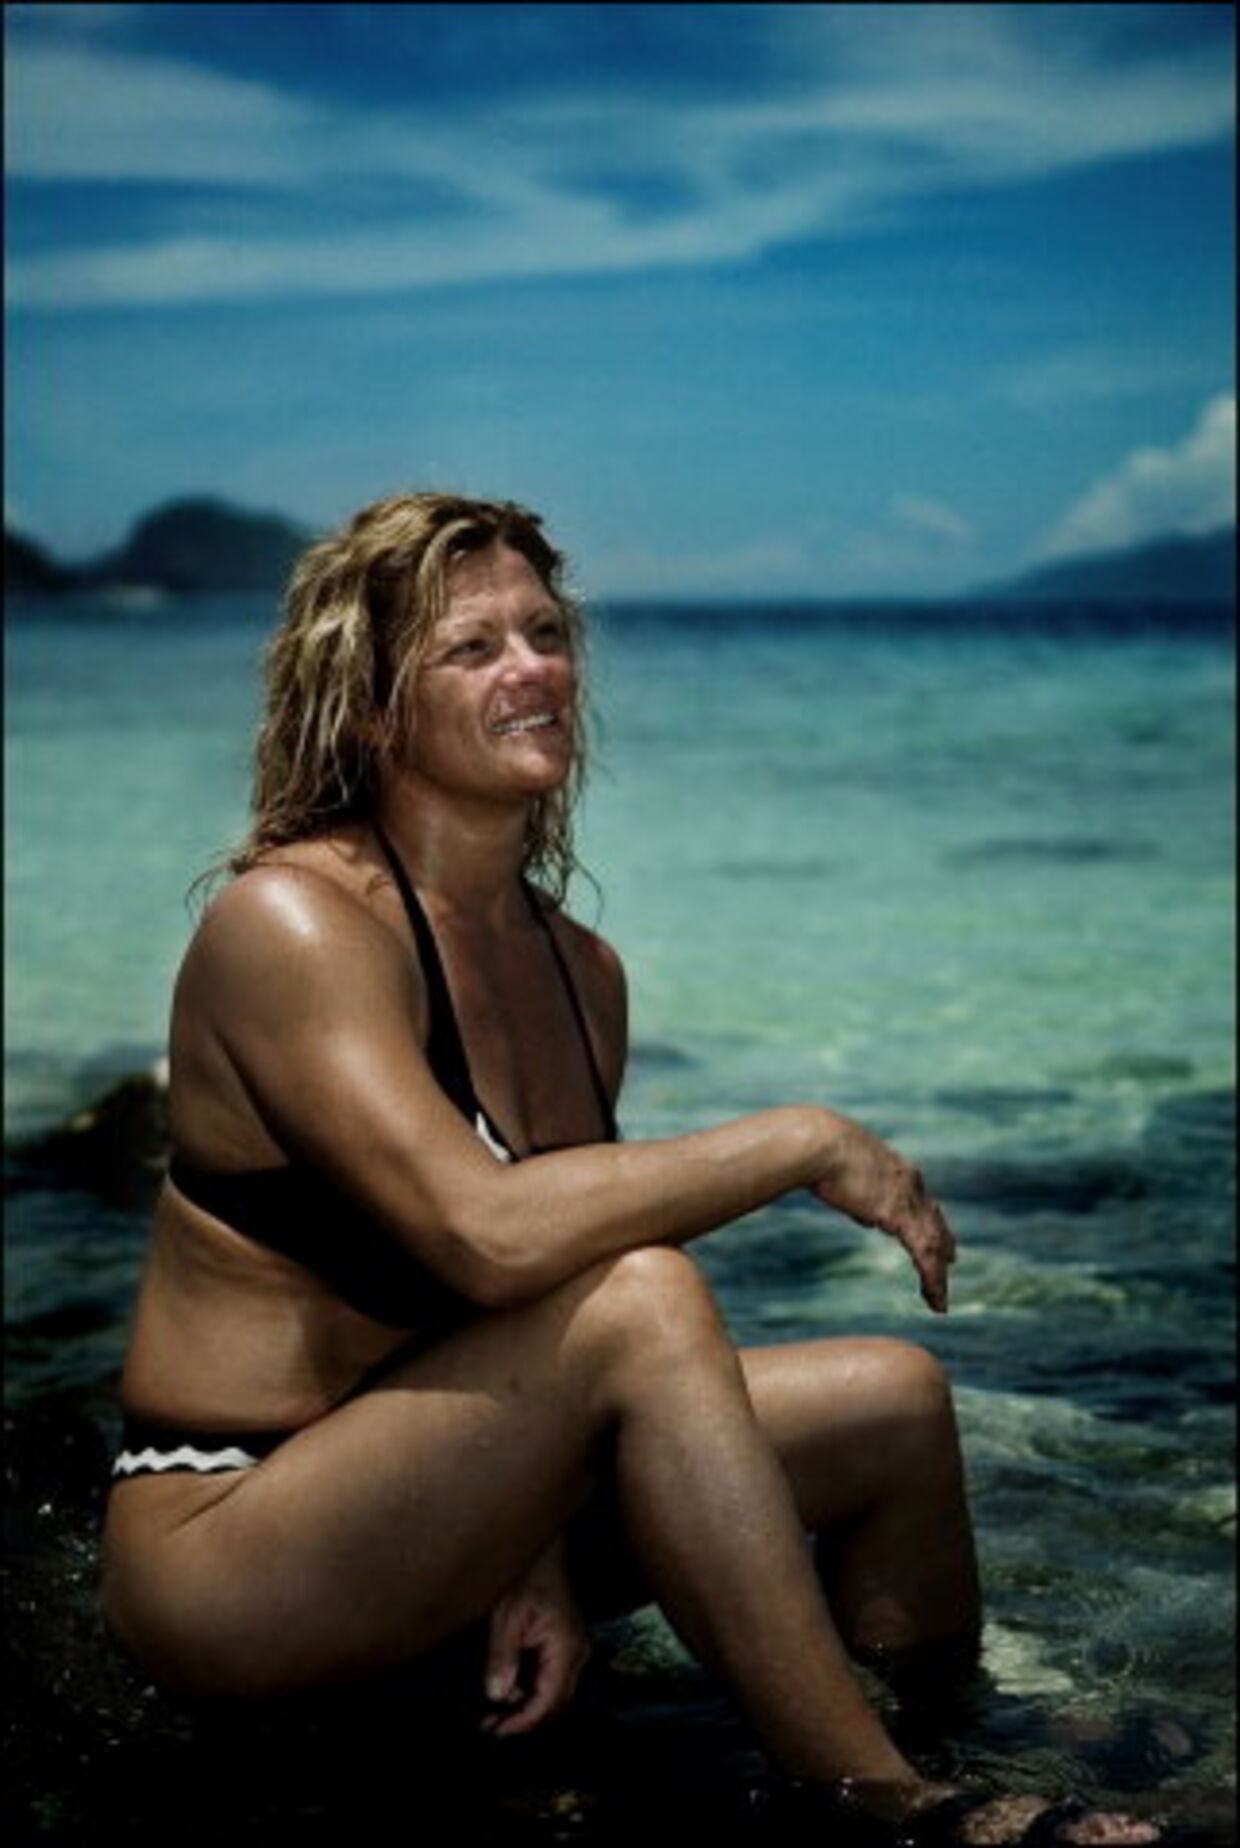 Michelle Strøyer Engstrøm blev den første vinder i årets udgave af Robinson og røg derfor over på vinder-øen. Foto: Jeppe Carlsen